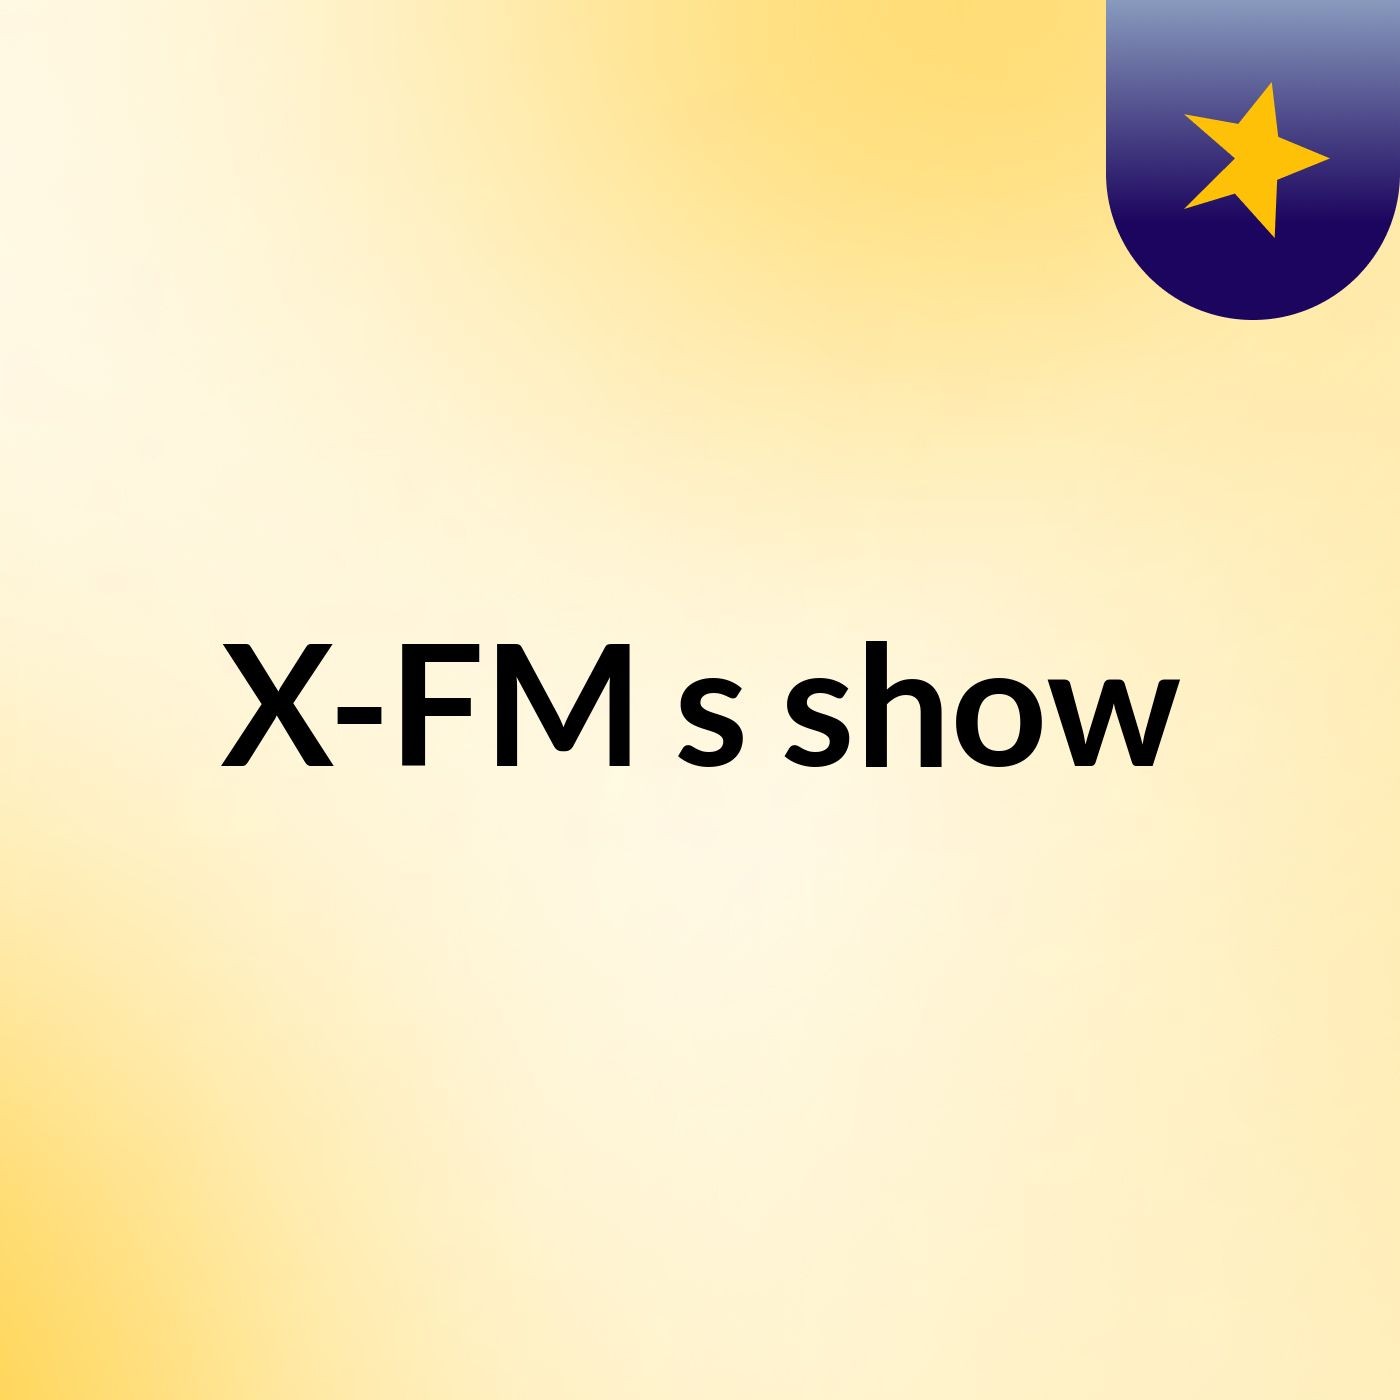 X-FM's show